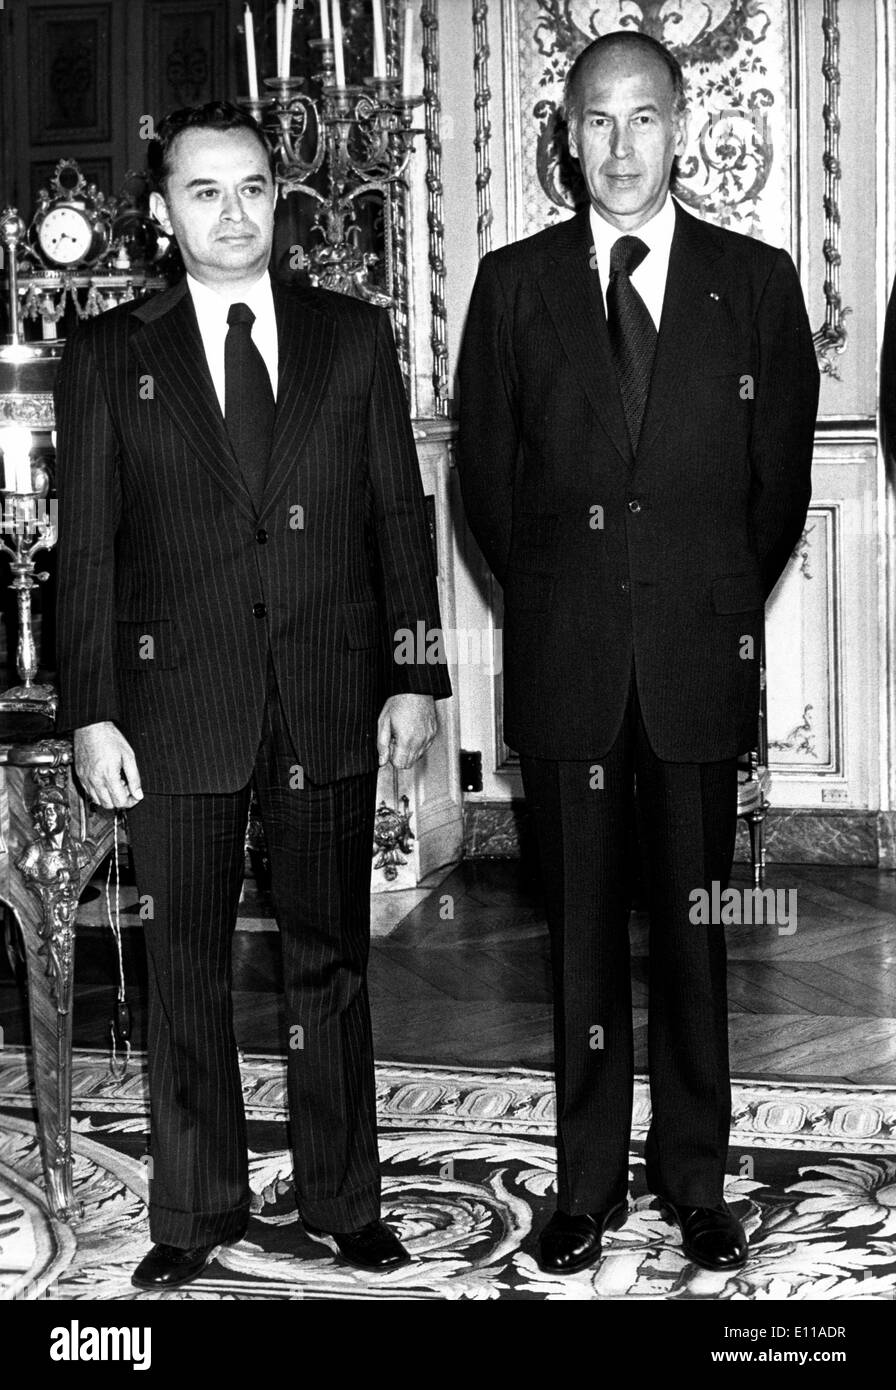 Jun 10, 1976; Paris, Francia; il nuovo Ambasciatore di El Salvador il sig. SALVADOR NAVARRETE AZURDIA è ora in Francia. Egli ha presentato le sue credenziali oggi al Presidente VALERY GISCARD all'Elysee. La foto mostra il signor Navarrete e il sig. Giscard all'Elysee a Parigi. Foto Stock